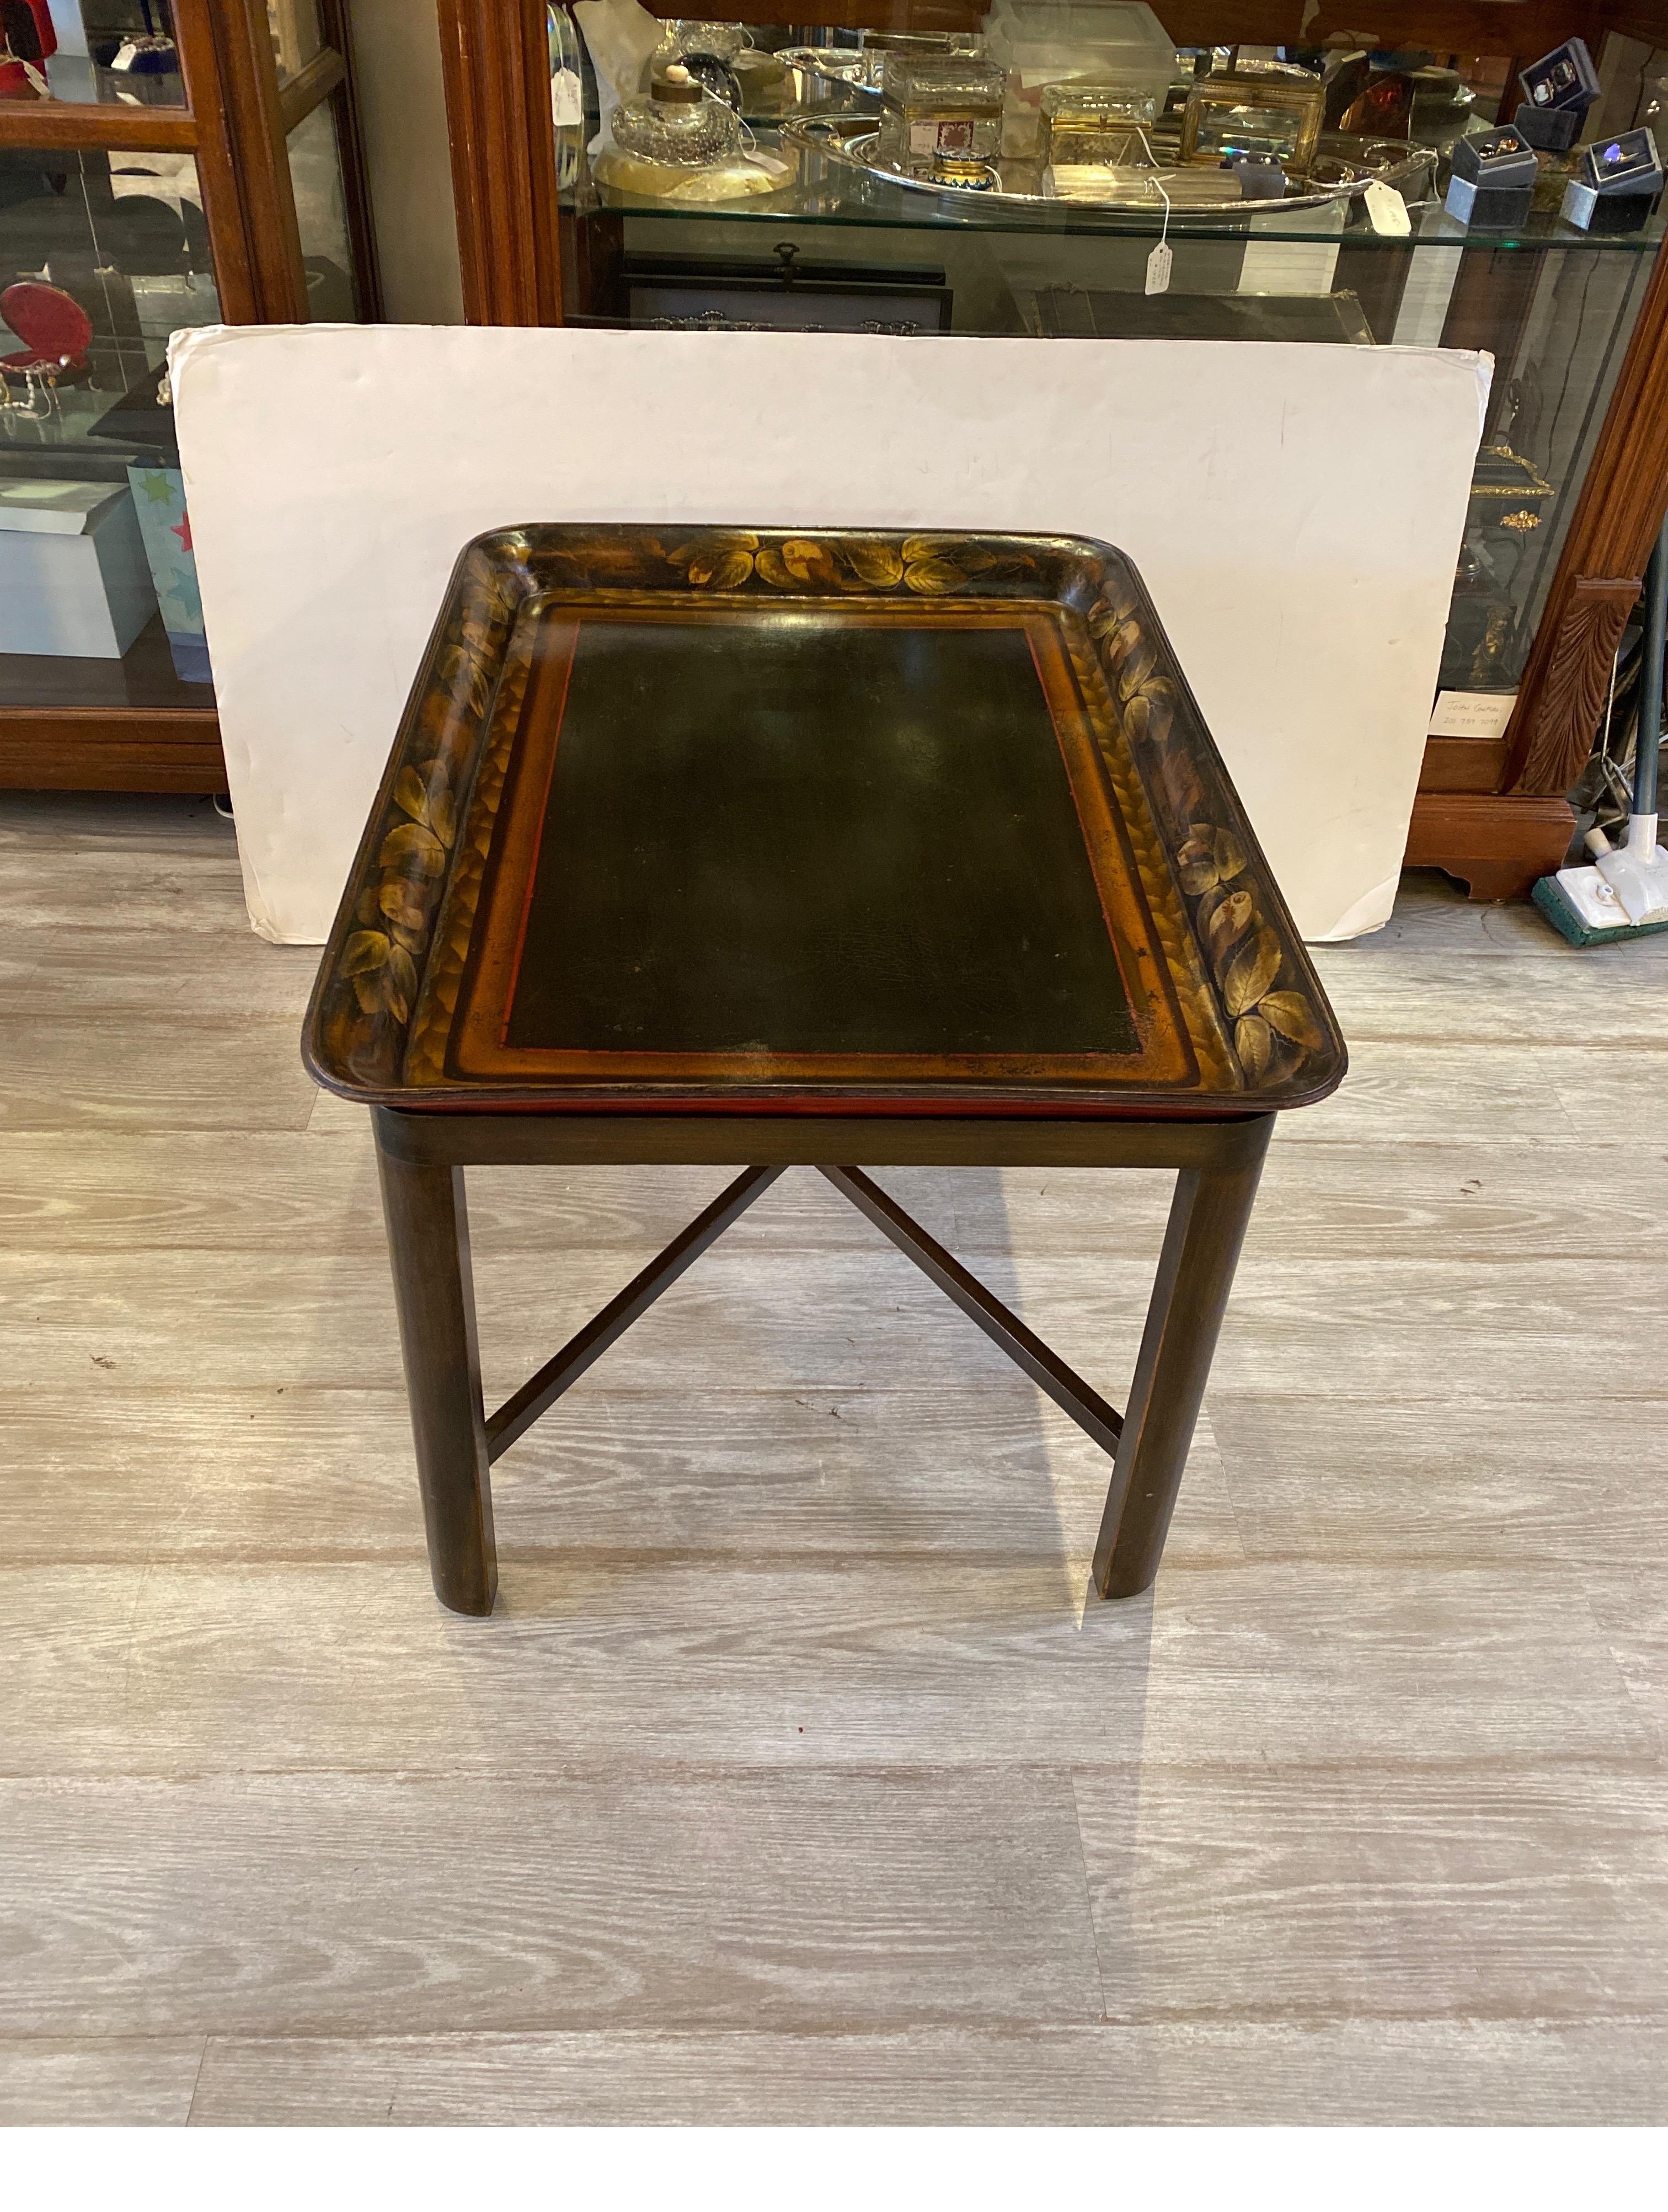 Hardwood Antique 19 Century English Papier-mâché Tray Table For Sale